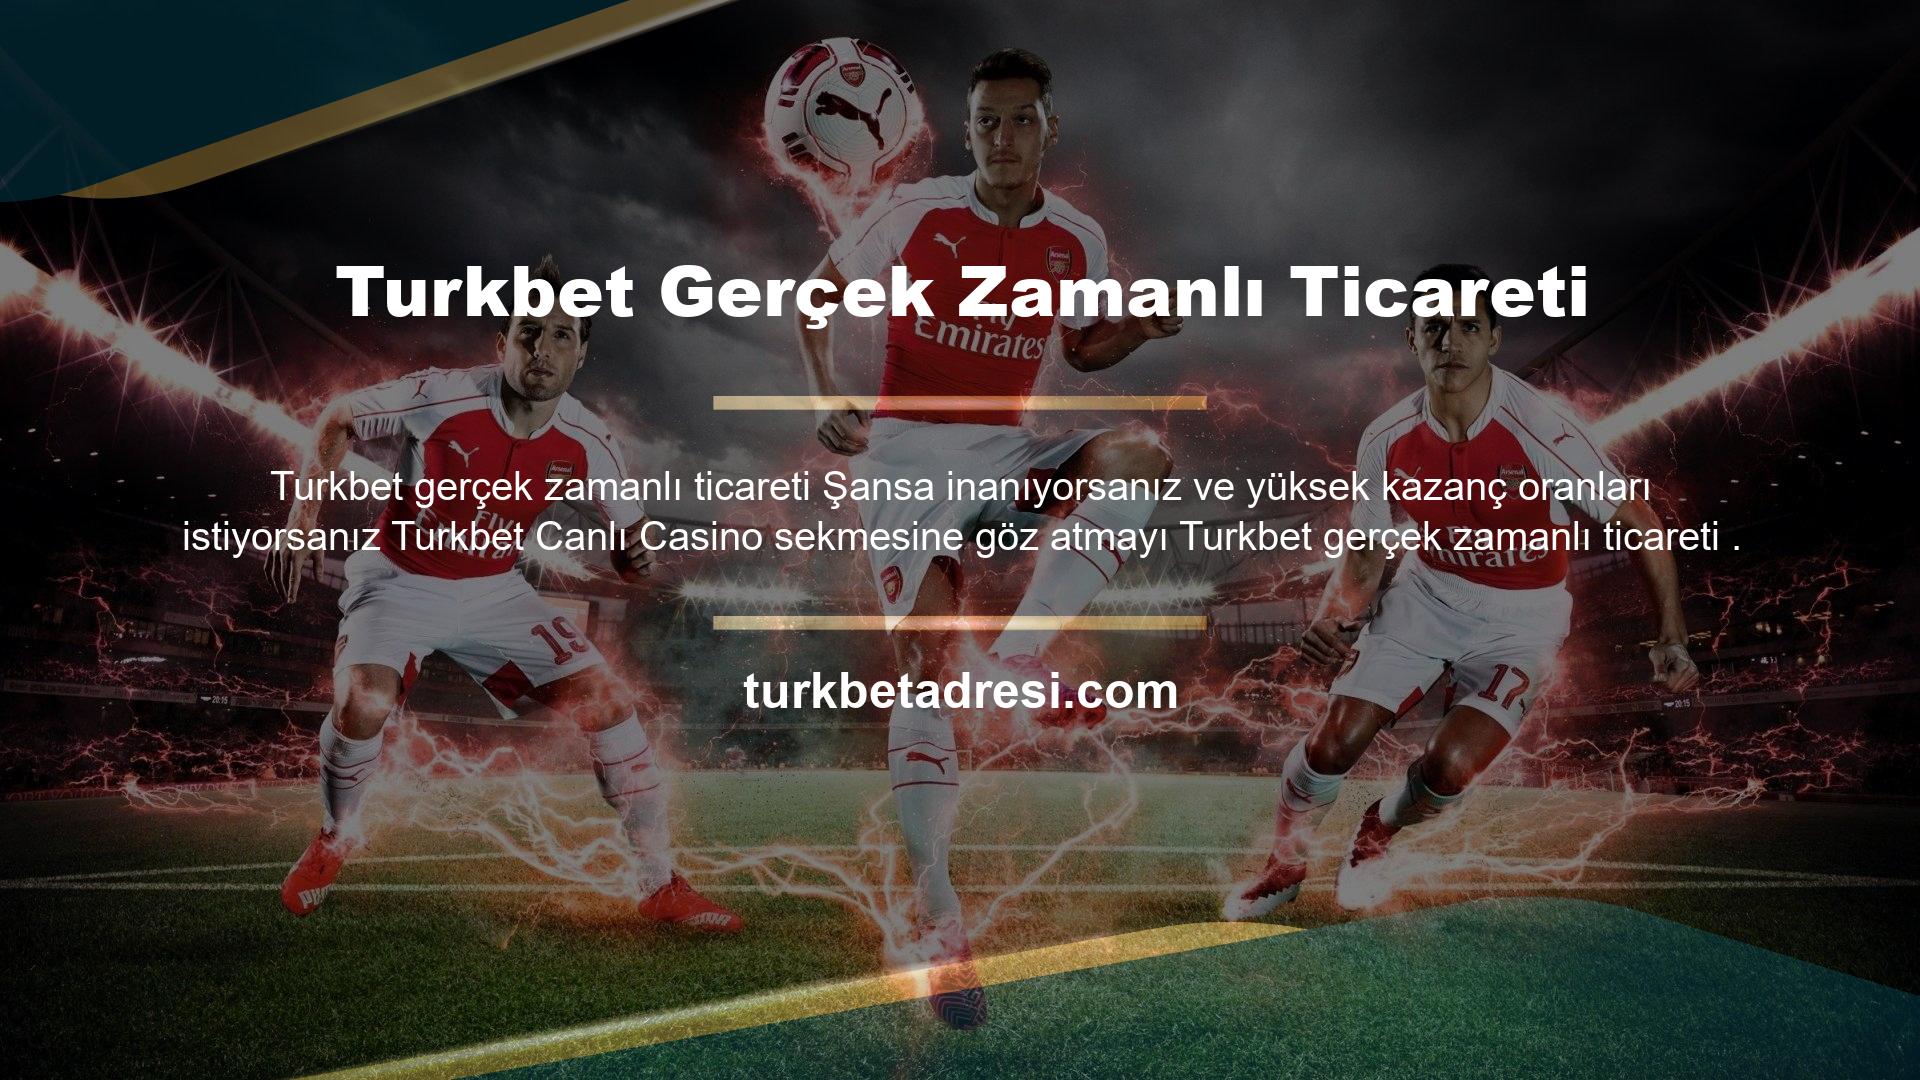 Tüm casino oyunlarına Turkbet altyapısı tarafından Turkbet gerçek zamanlı ticareti masaüstü ve mobil uygulamalar kullanılarak erişilebilir